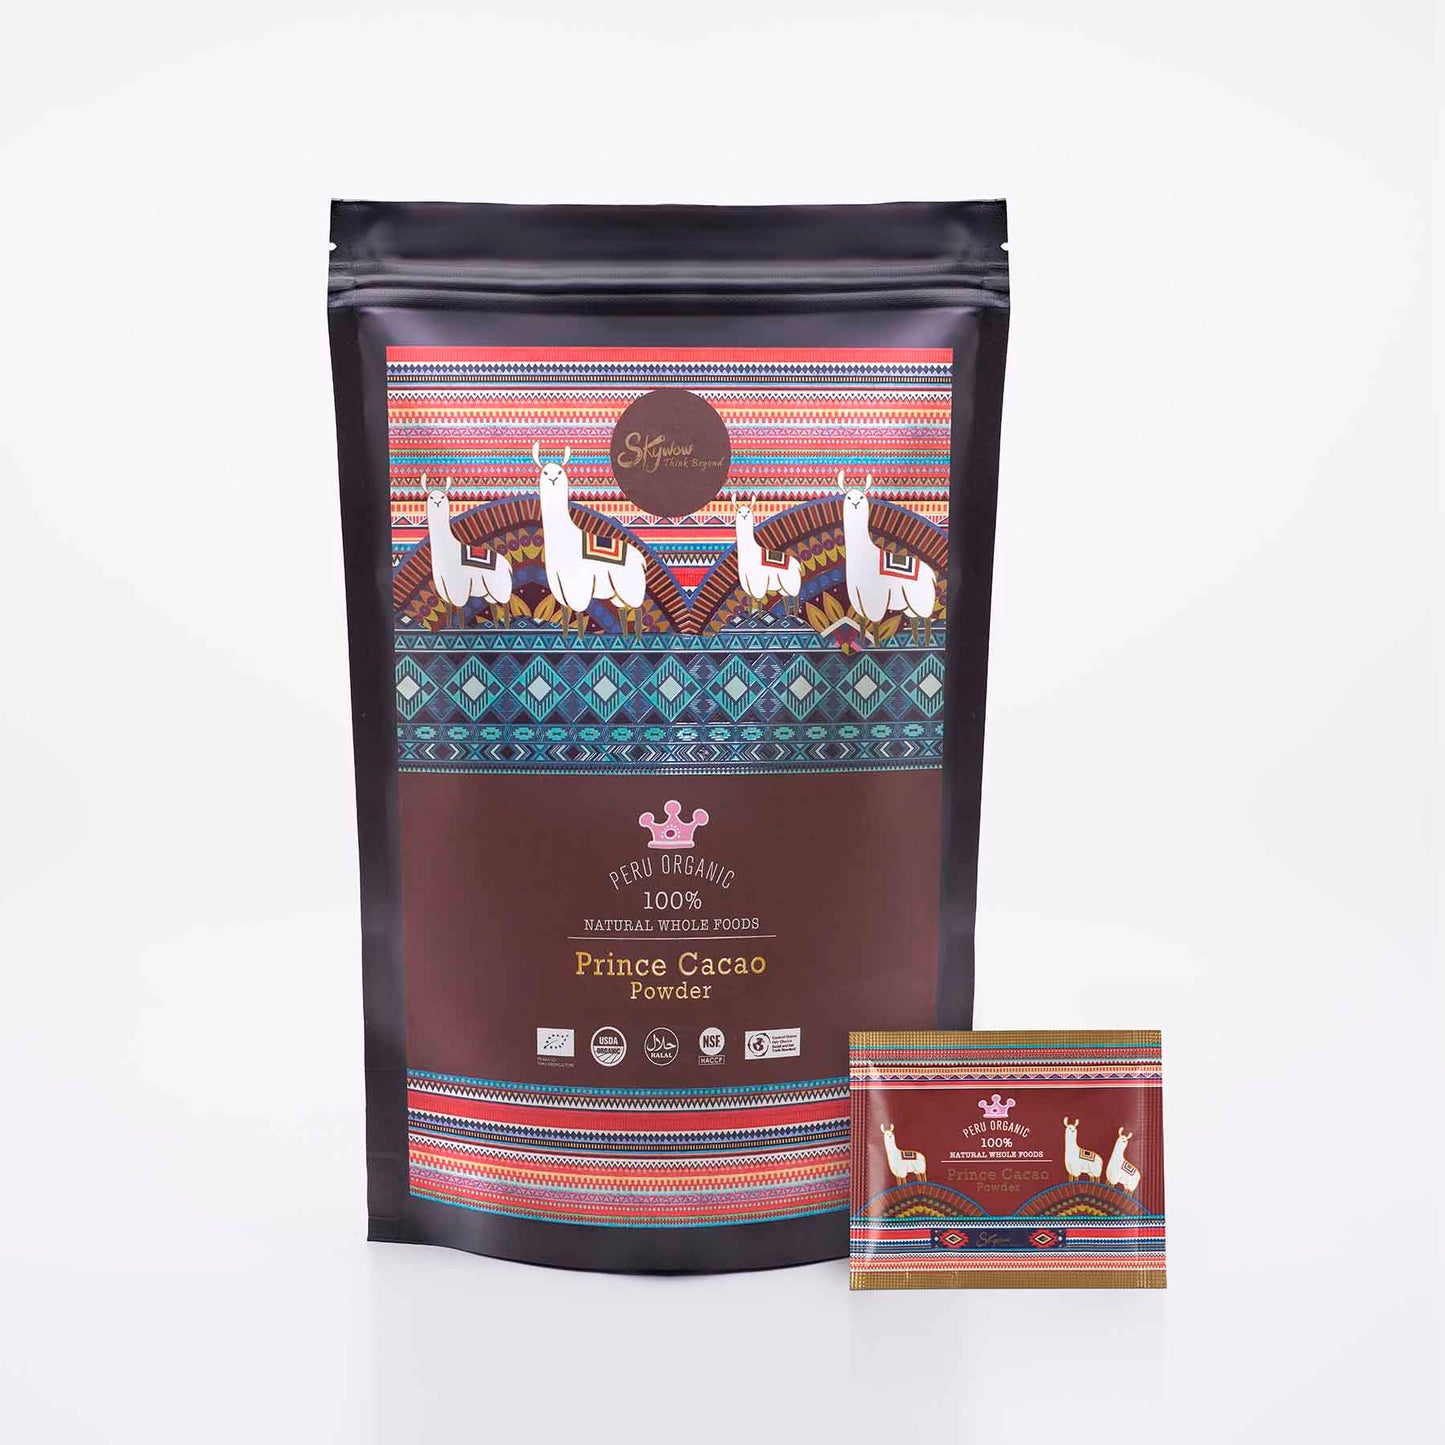 Skywow Organic Printce Cacao Powders from Peru